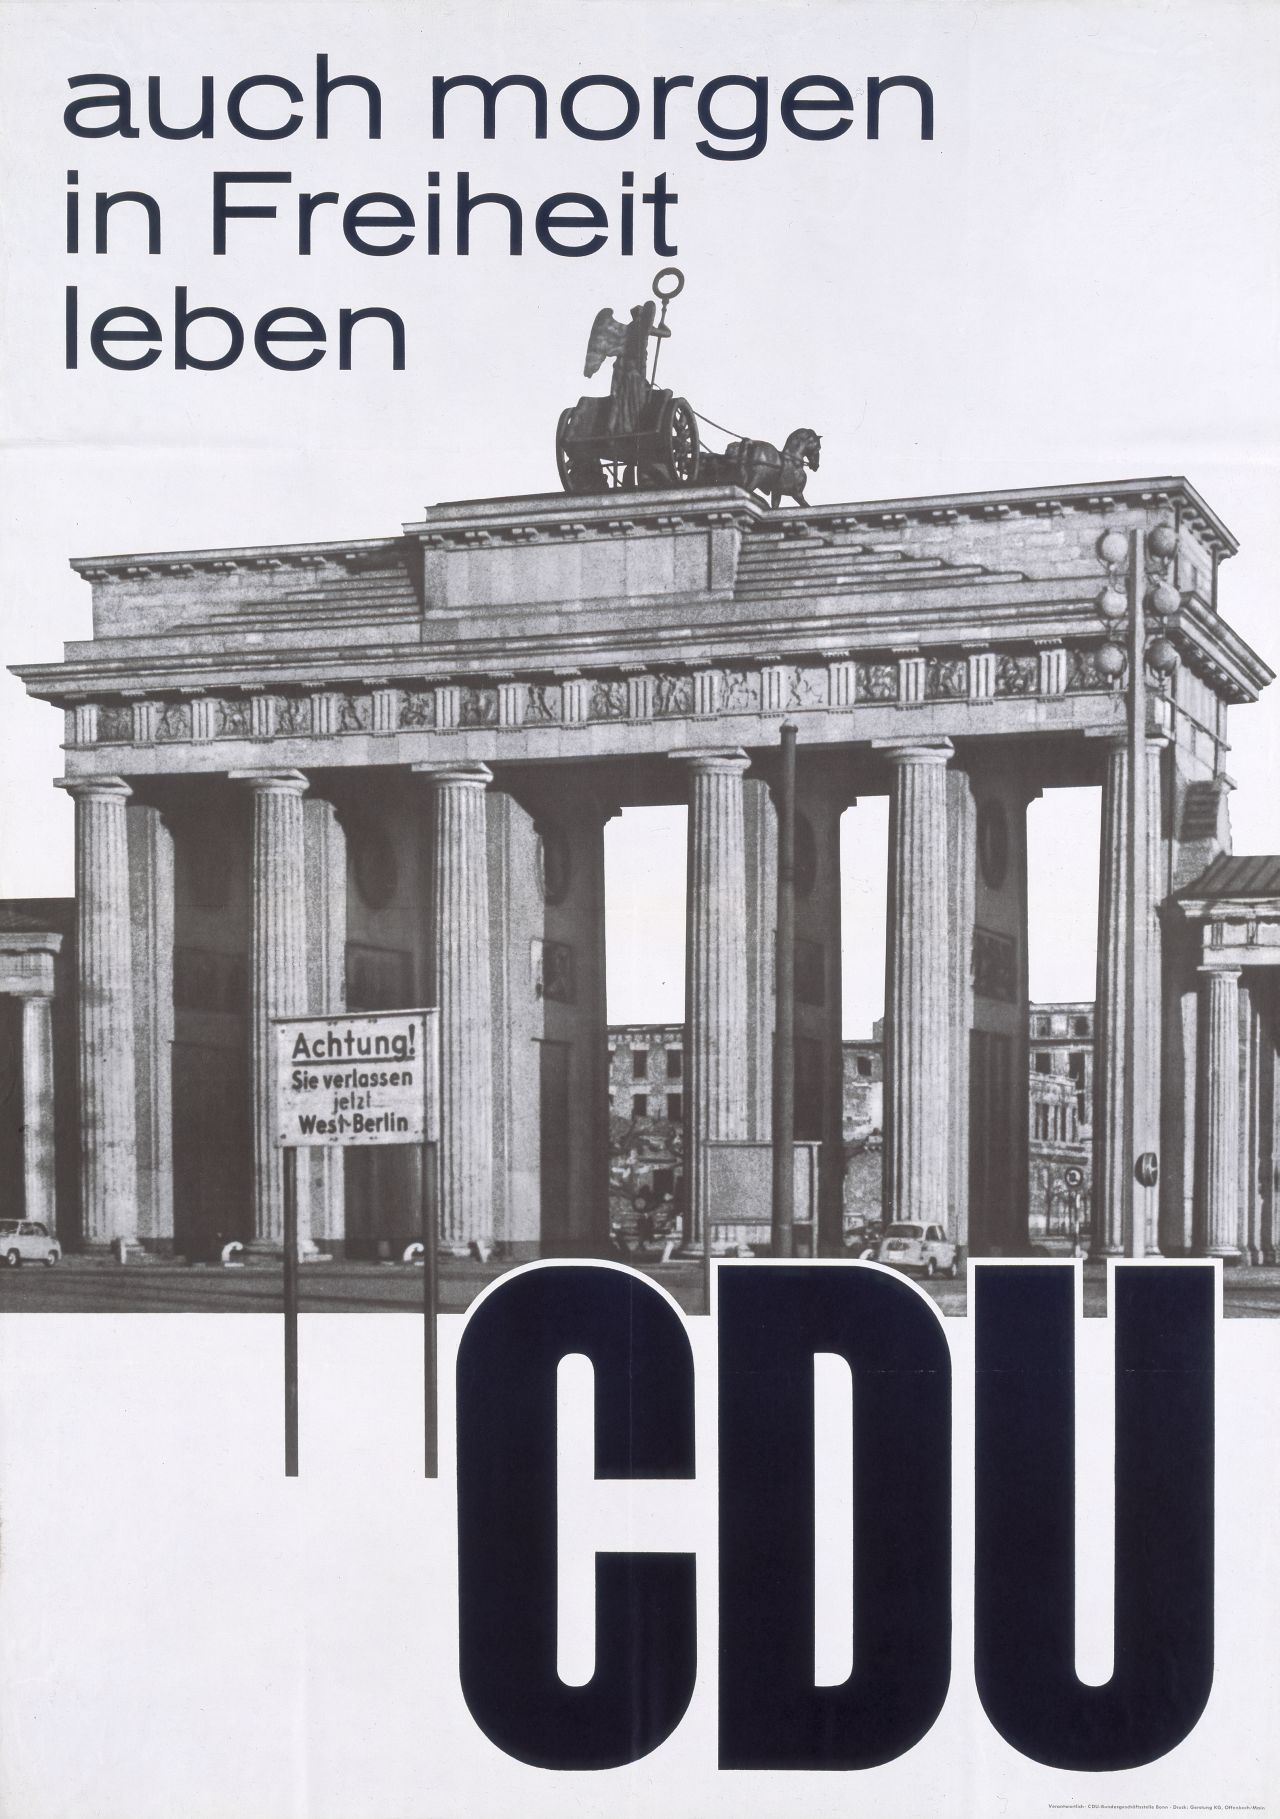 Grauer Grund mit der Abbildung des Brandenburger Tores. Darüber erscheint der Plakattitel, darunter der Name der Partei, CDU.